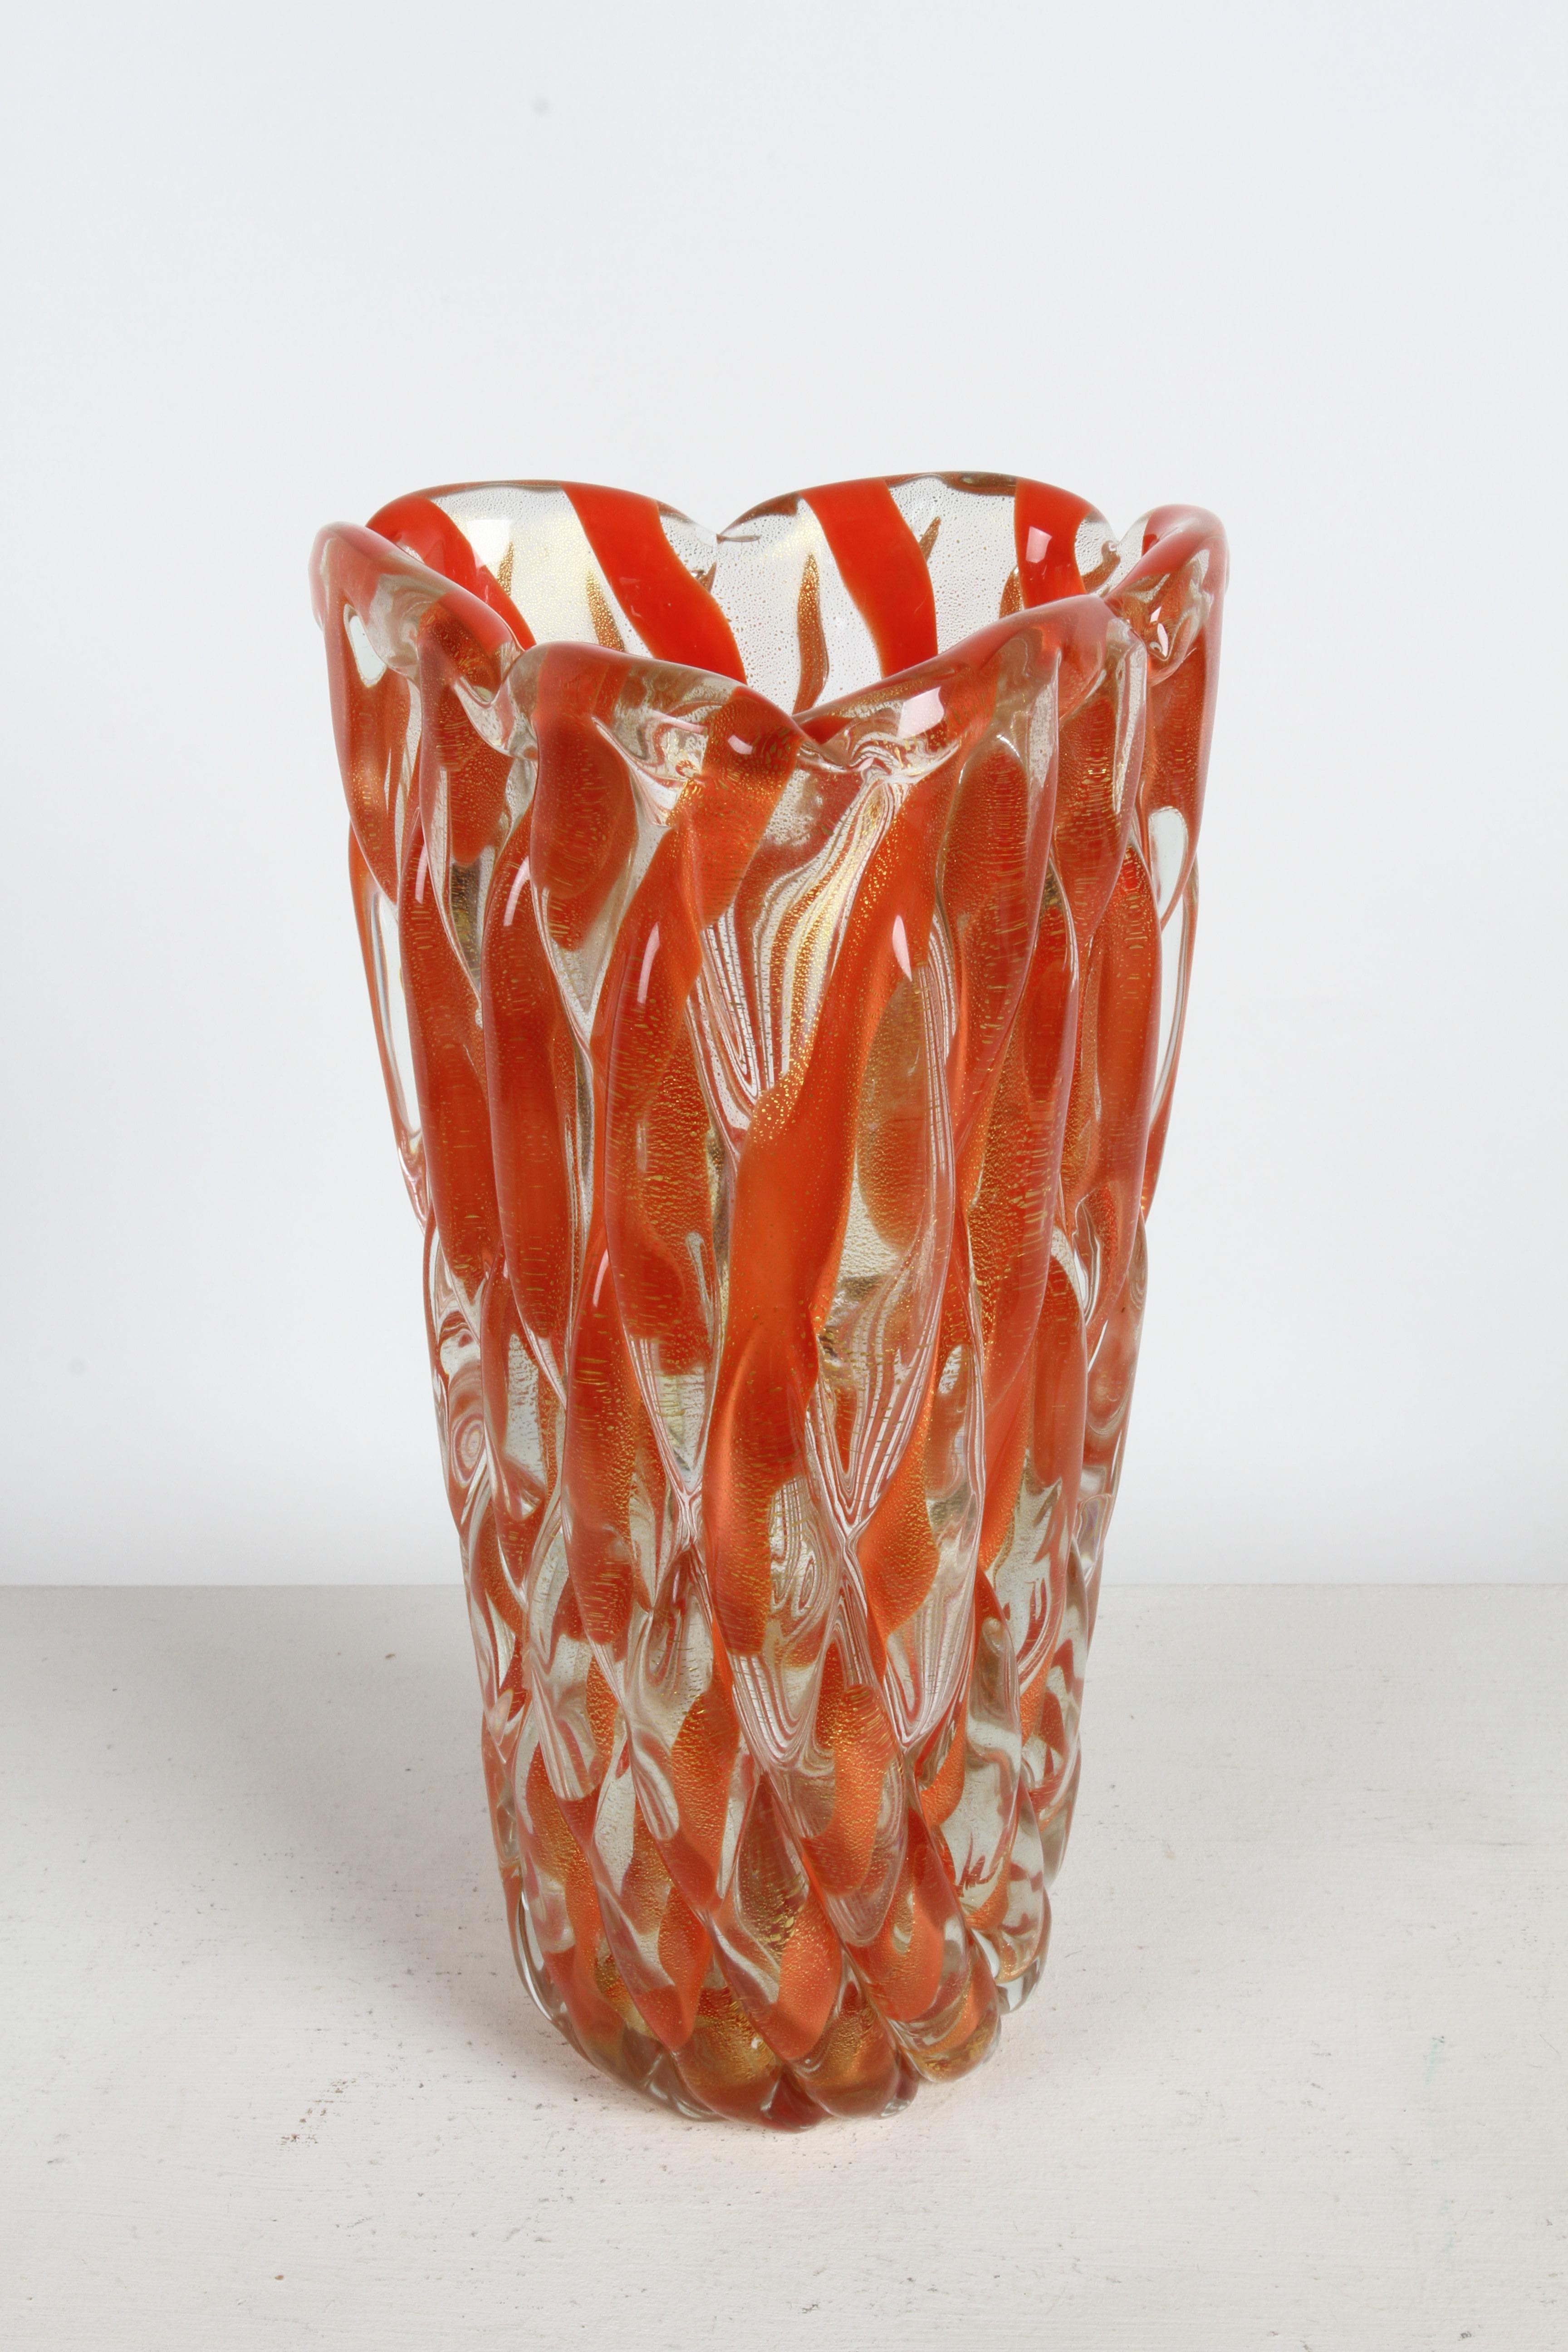 Jarrón grande y pesado de cristal soplado de Murano de mediados de siglo, diseñado por Alfredo Barbini (1912-2007), hacia la década de 1950. Forma triangular alta con grueso cristal estriado retorcido de vidrio a rayas coral / naranja con moteado